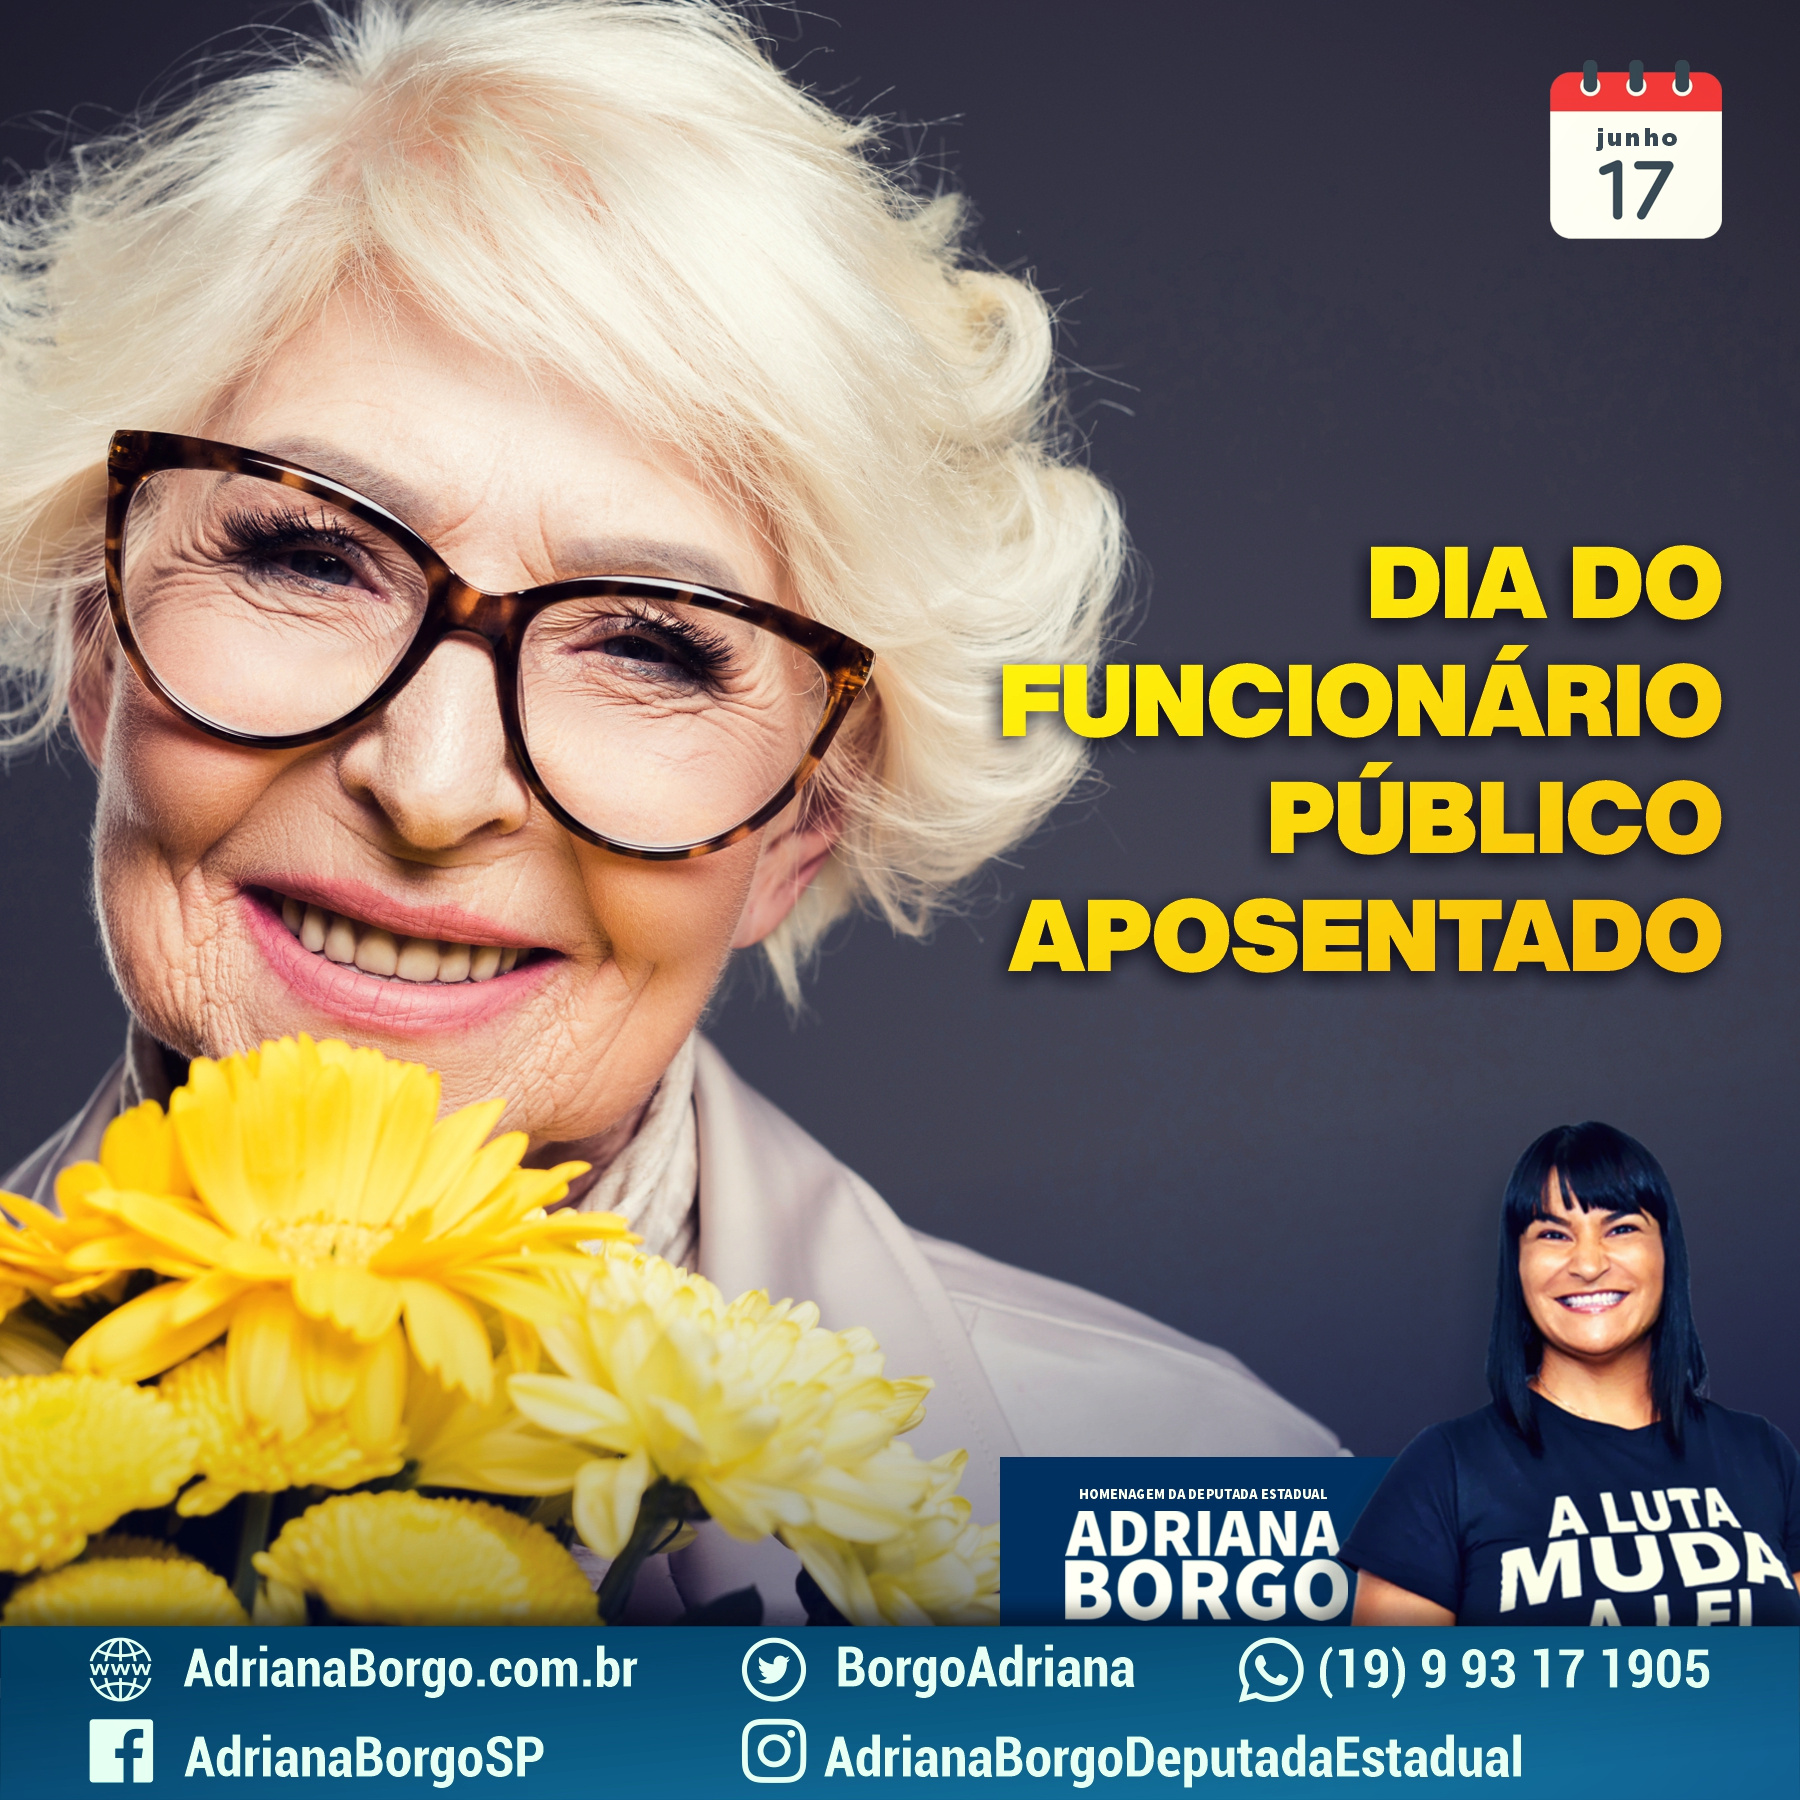 Adriana Borgo - Dia do Funcionário Público Aposentado - v2(2)